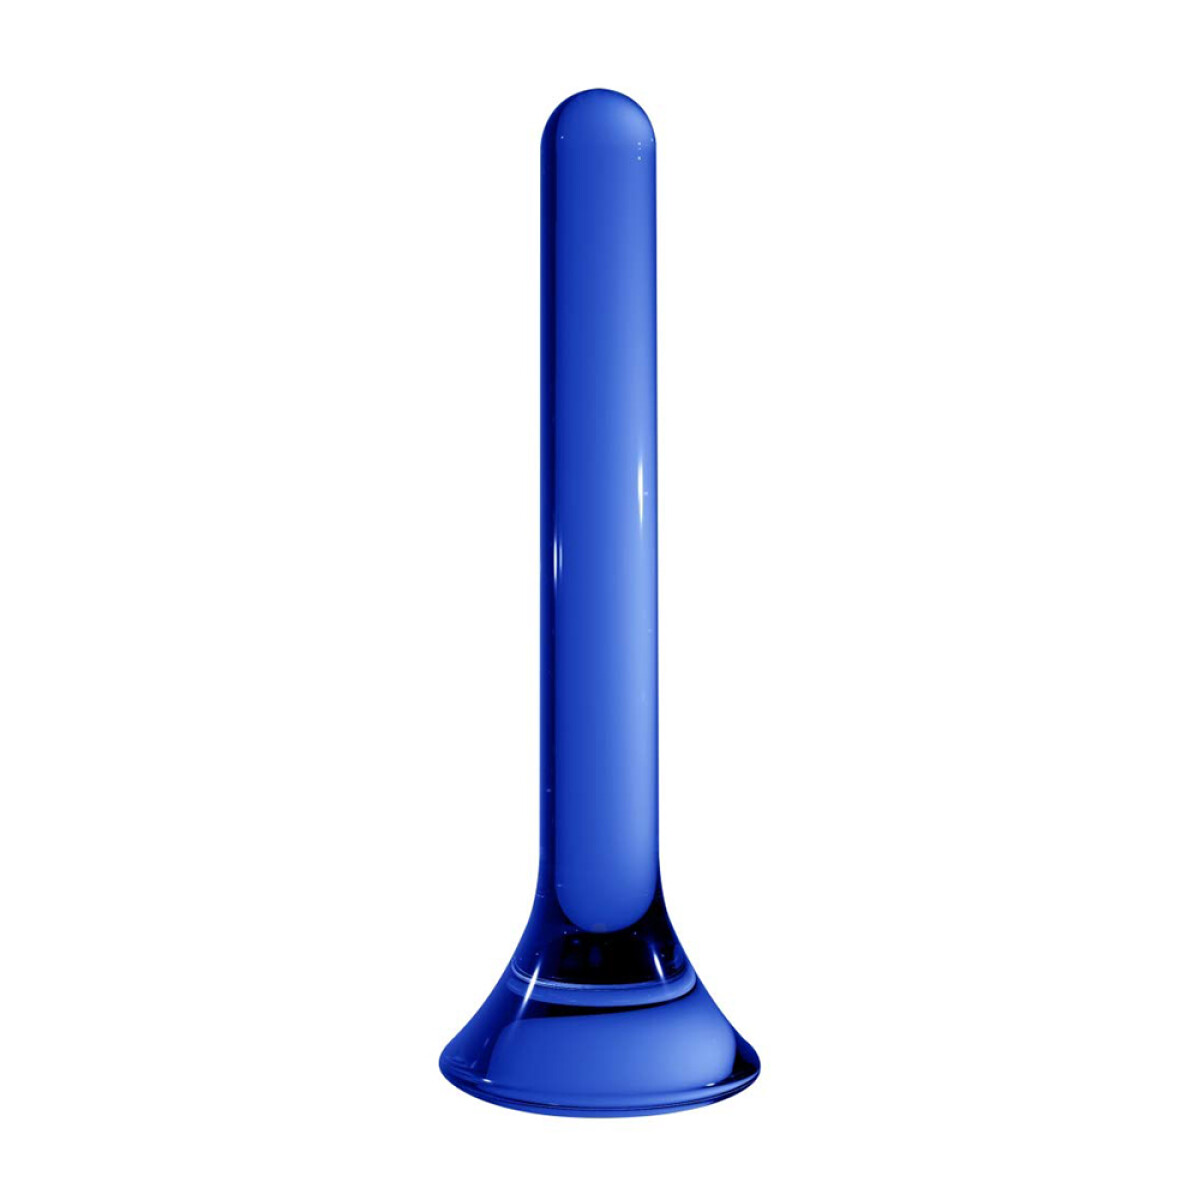 Chrystalino Tower Azul 